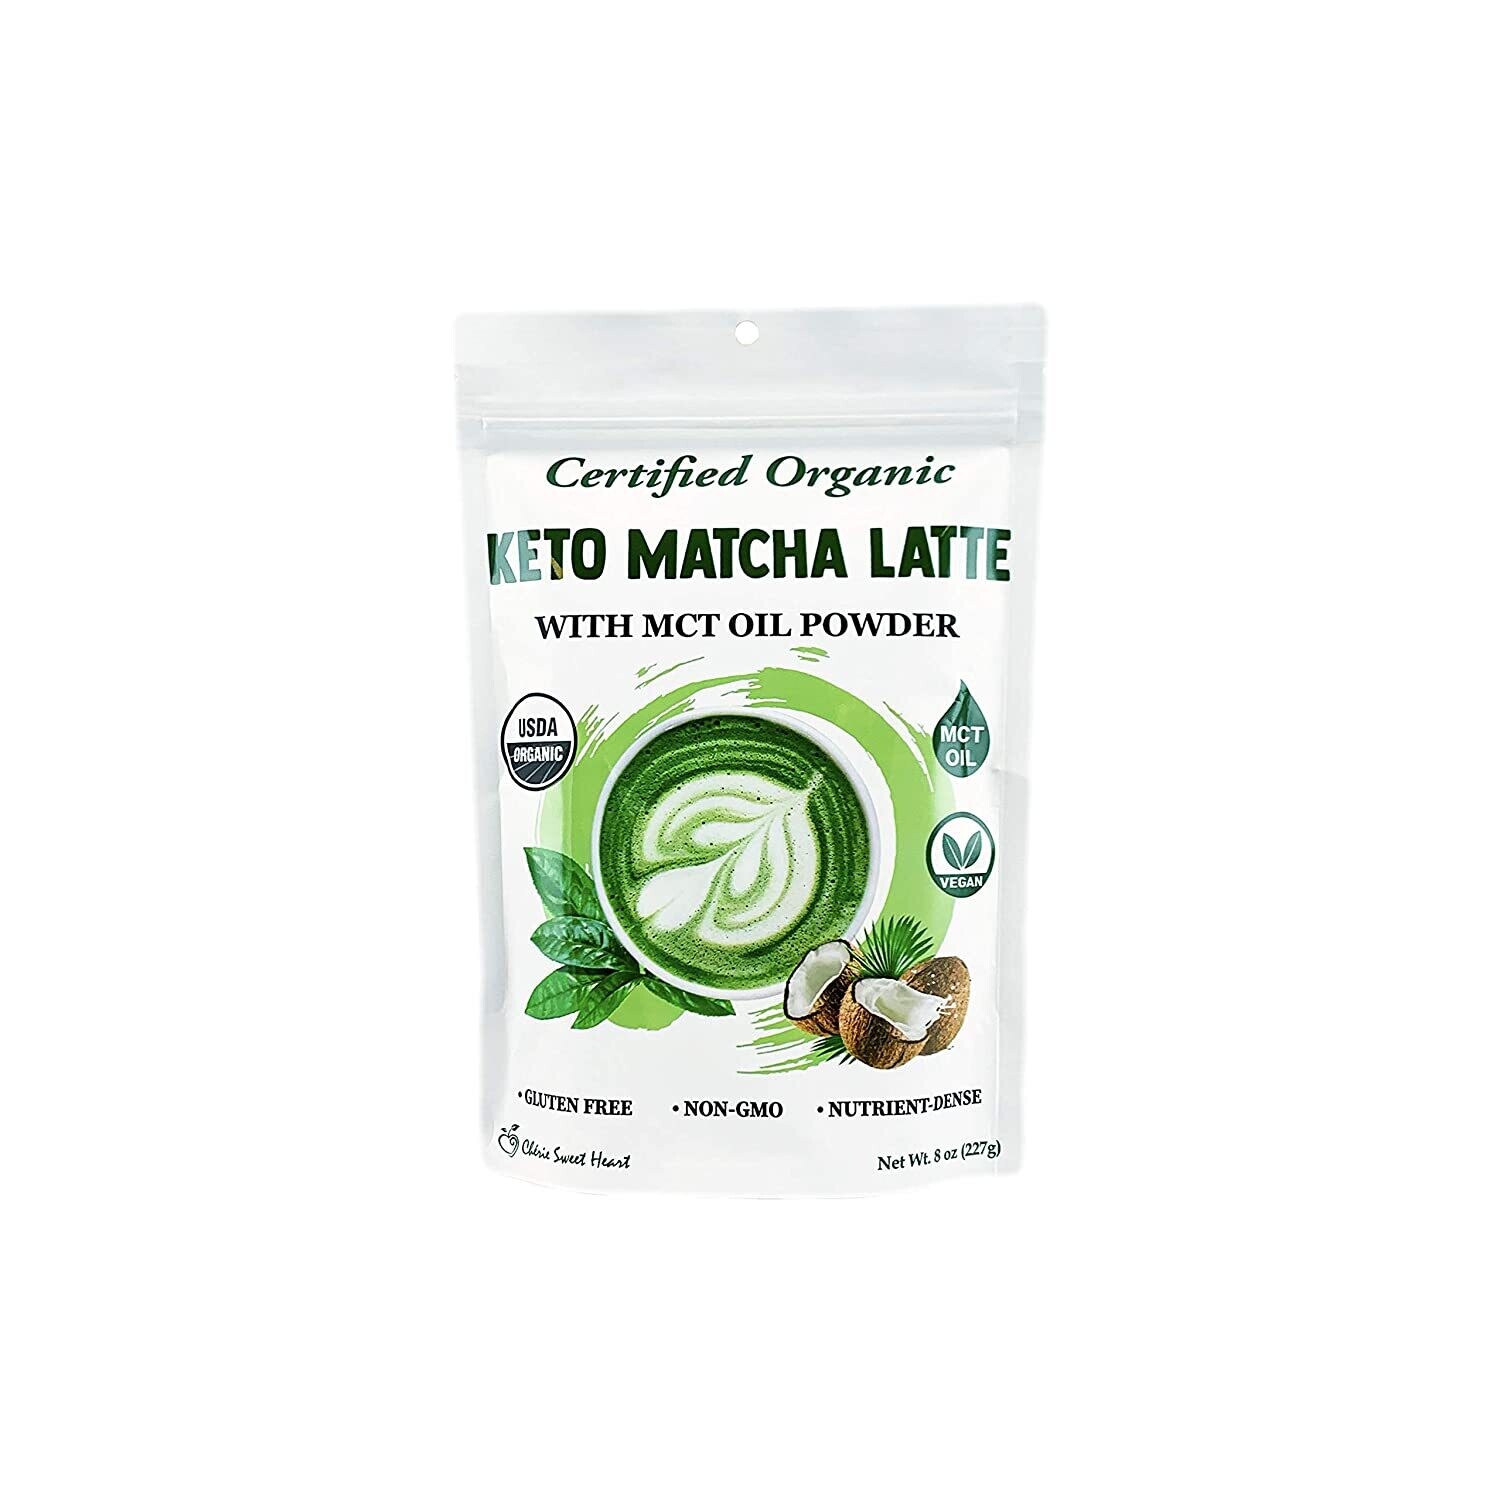 Certified Organic Keto Matcha Latte